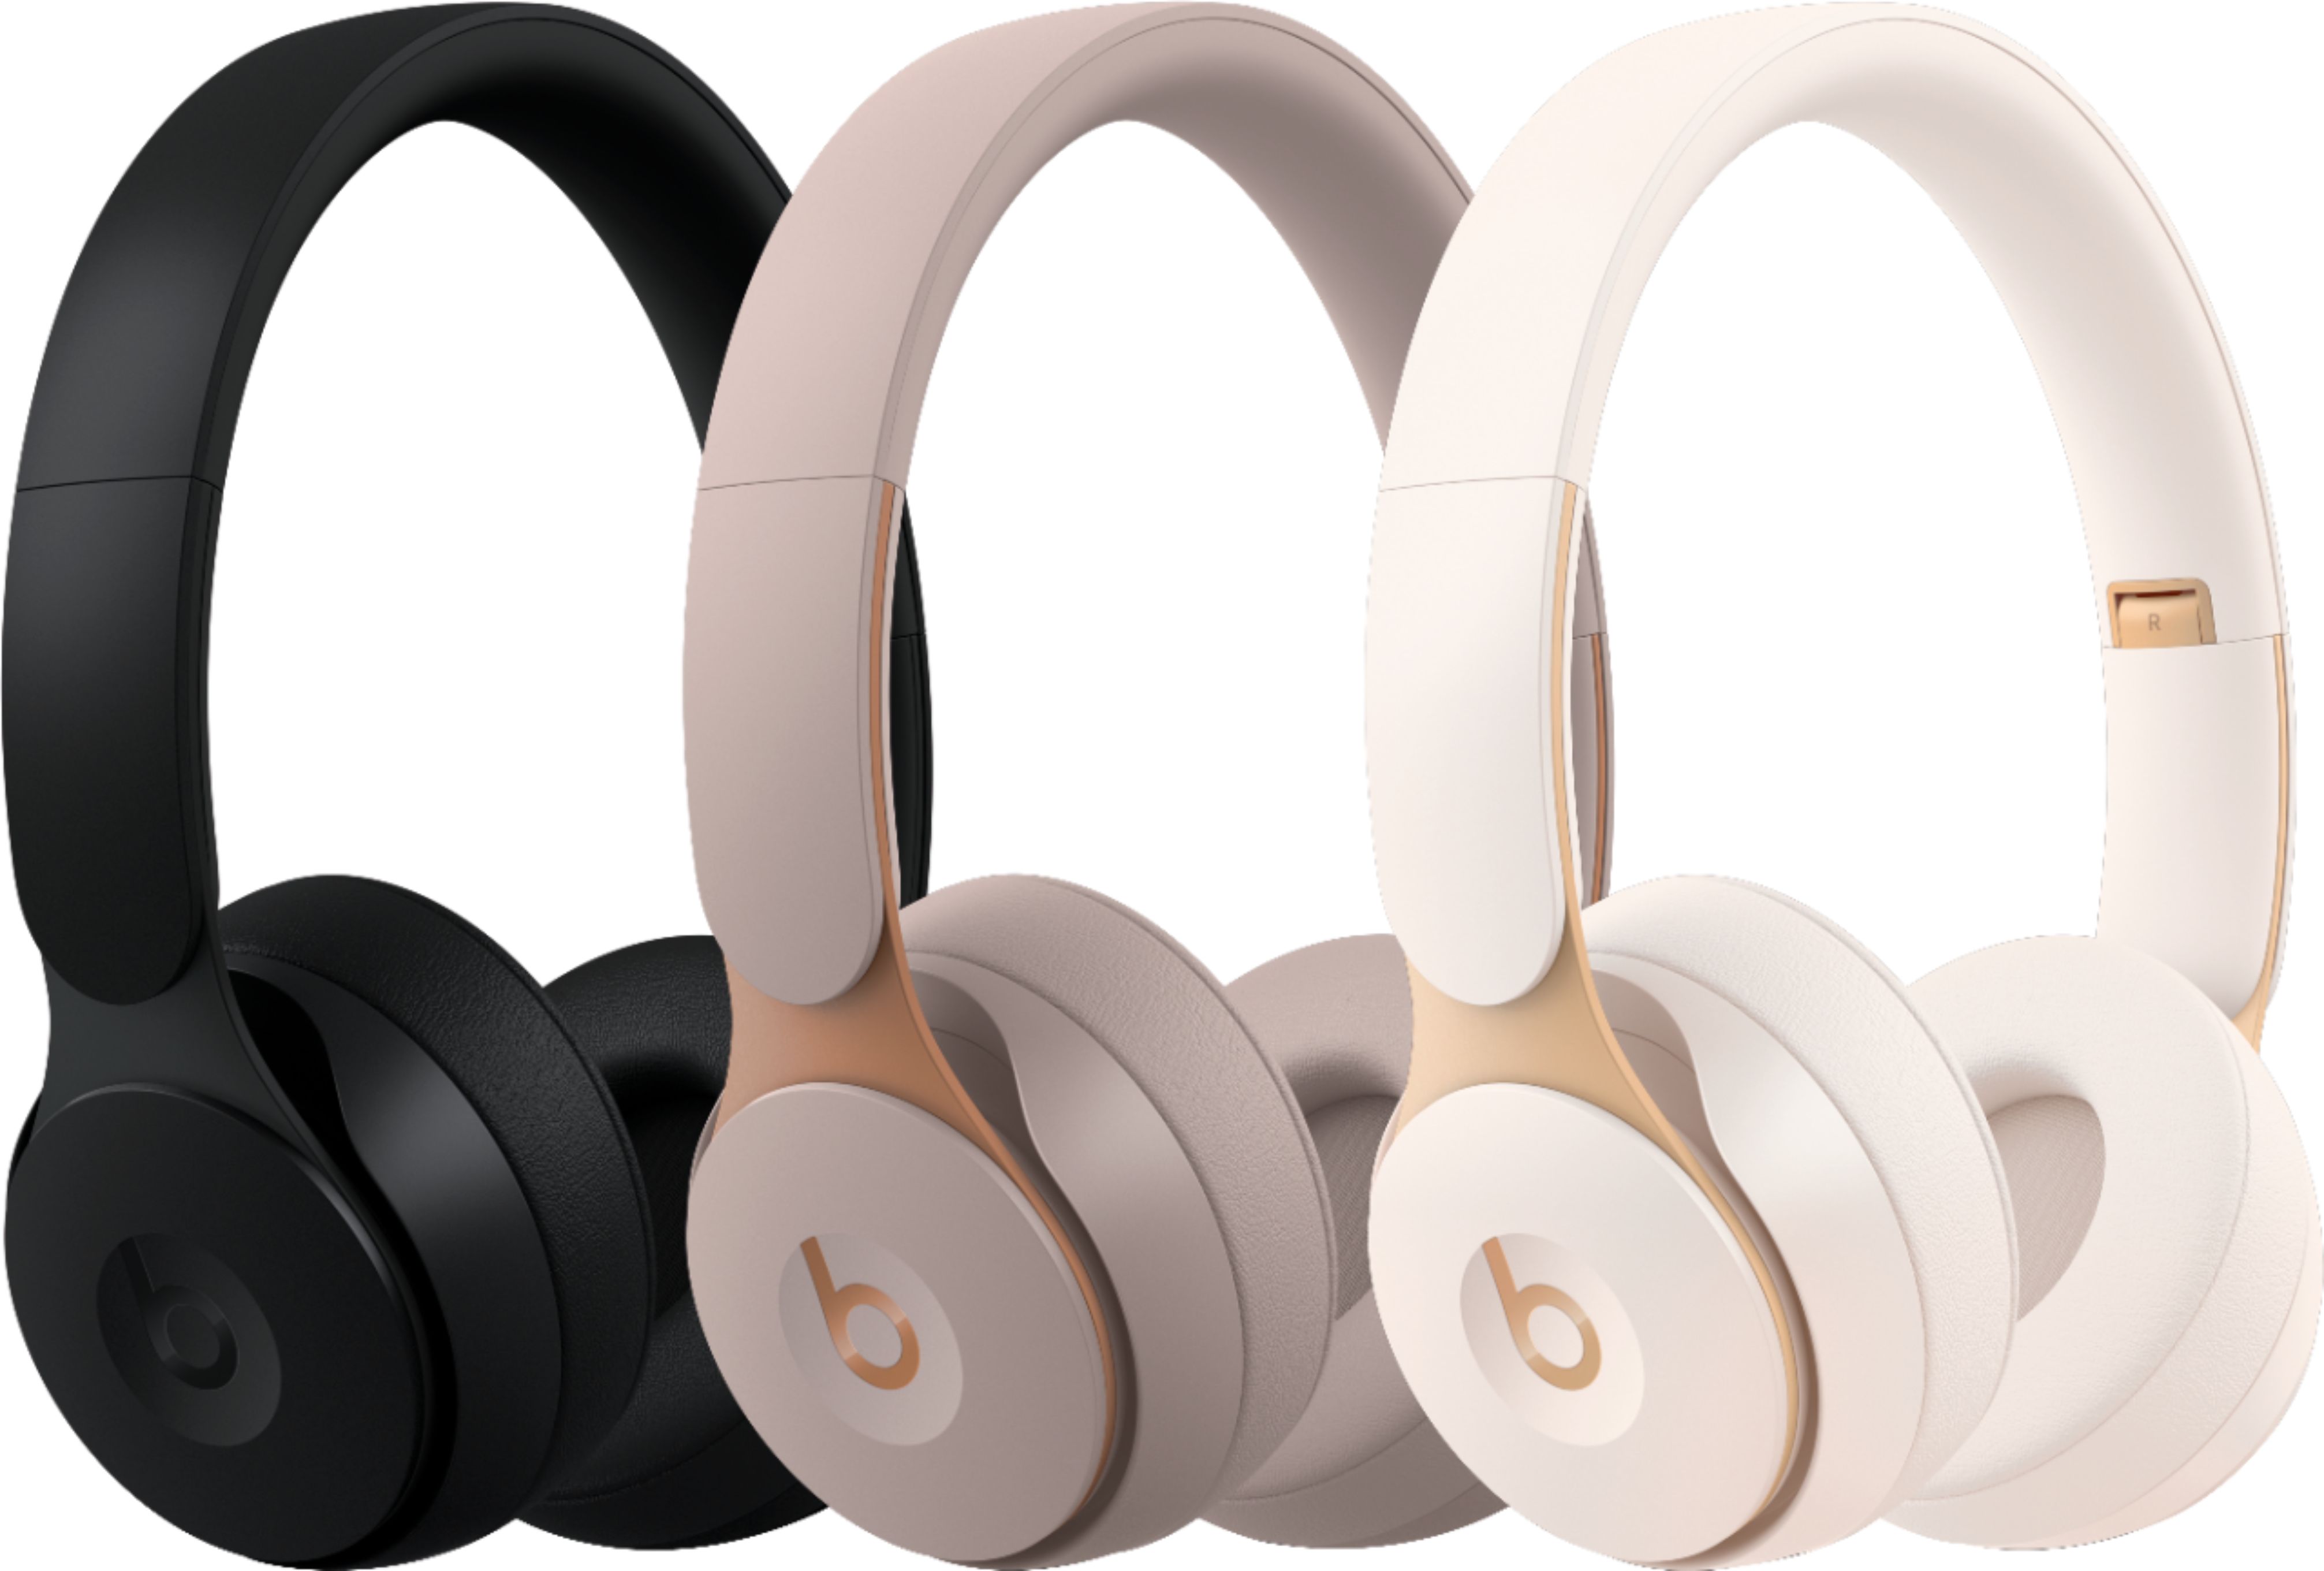 Best Buy: Beats by Dr. Dre Solo Pro Wireless Noise Cancelling On-Ear  Headphones Gray MRJ72LL/A